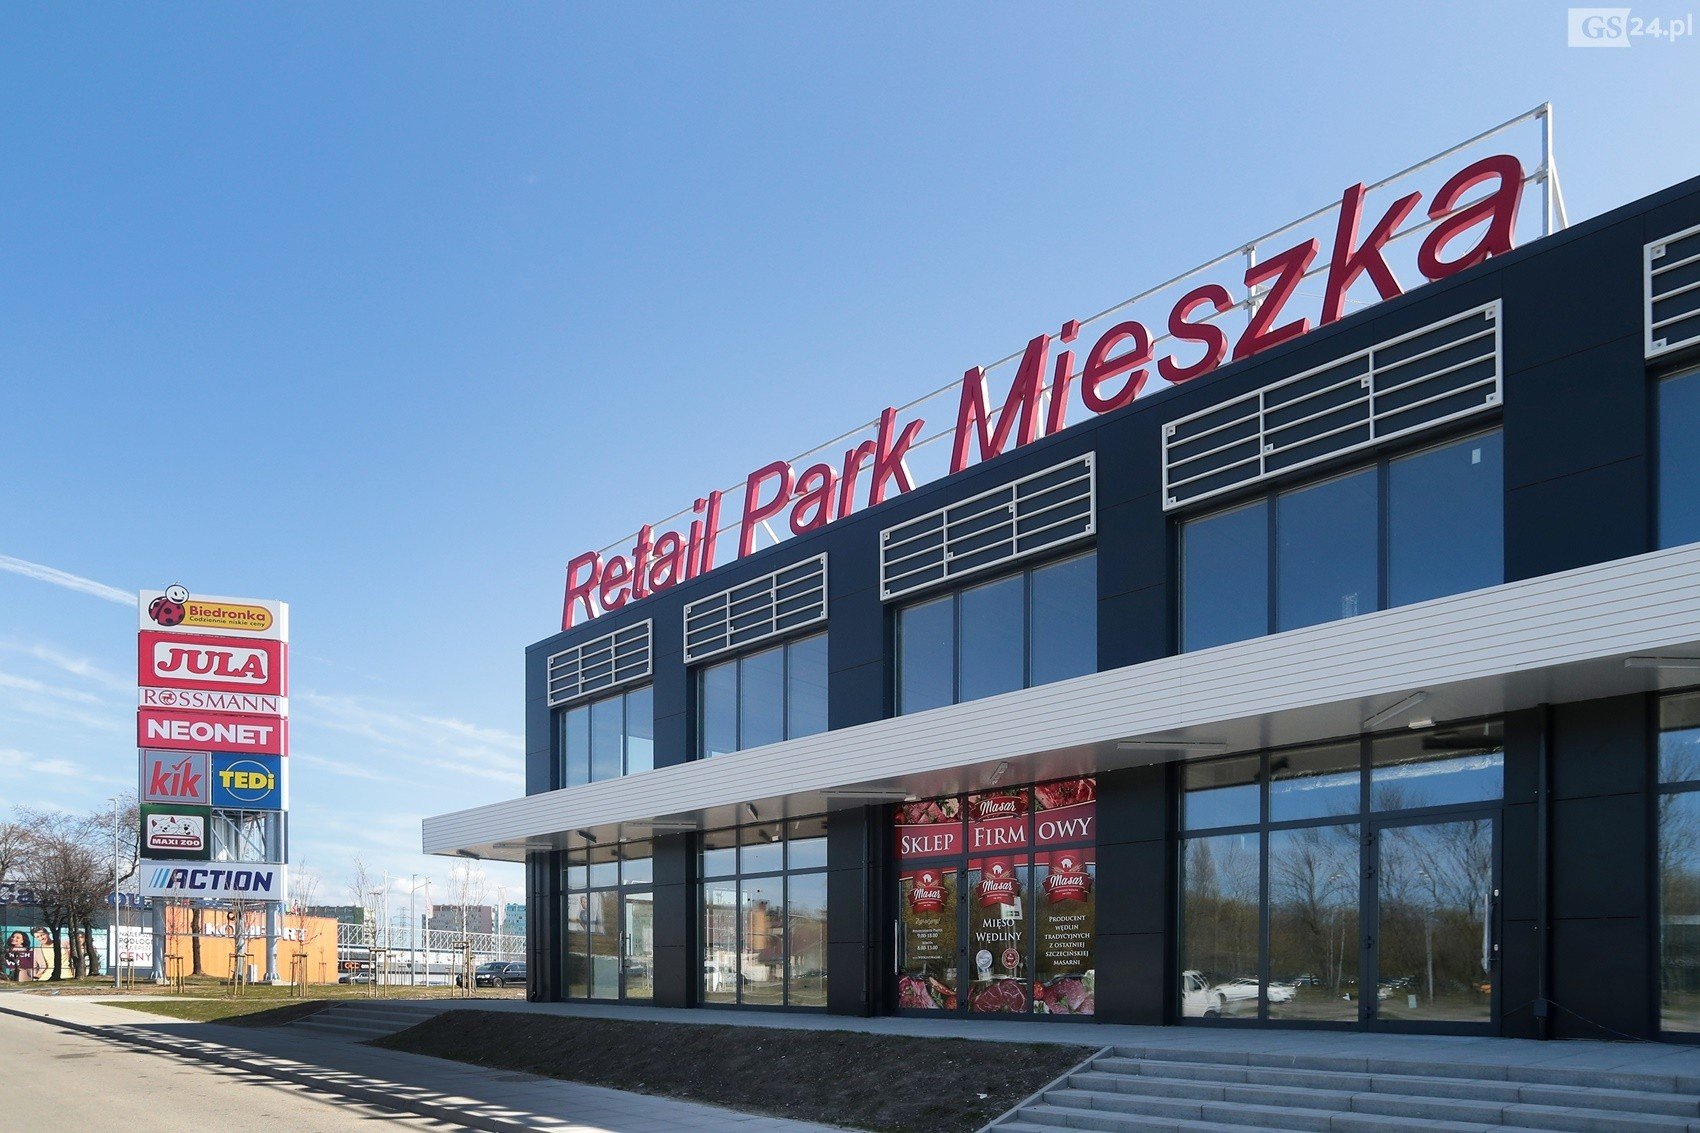 Retail Park Mieszka w Szczecinie gotowy. Kolejne sklepy wprowadzają się do  nowego centrum handlowego | Głos Szczeciński